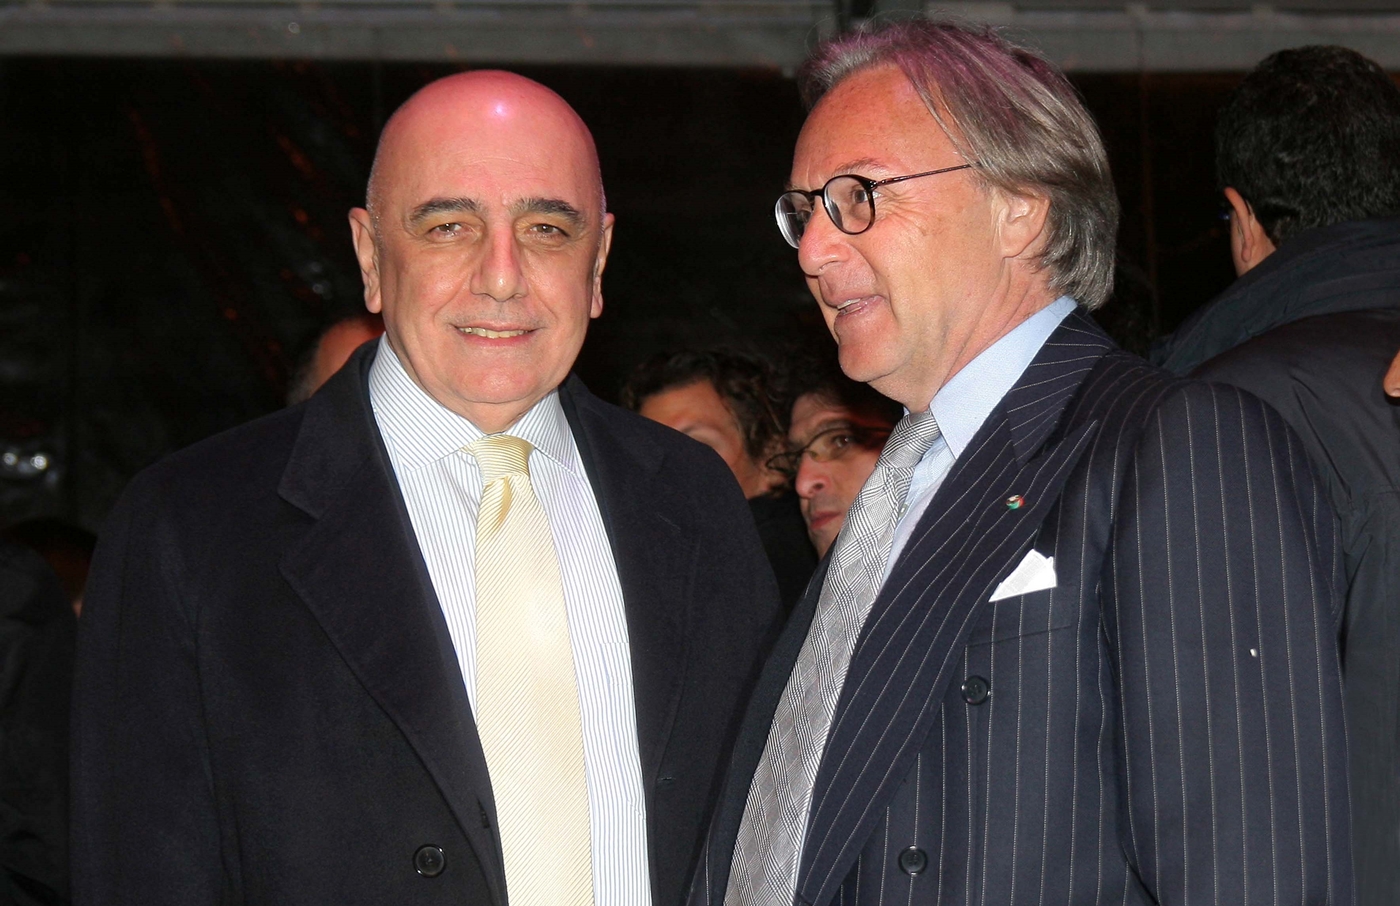 Adriano Galliani e Diego Della Valle